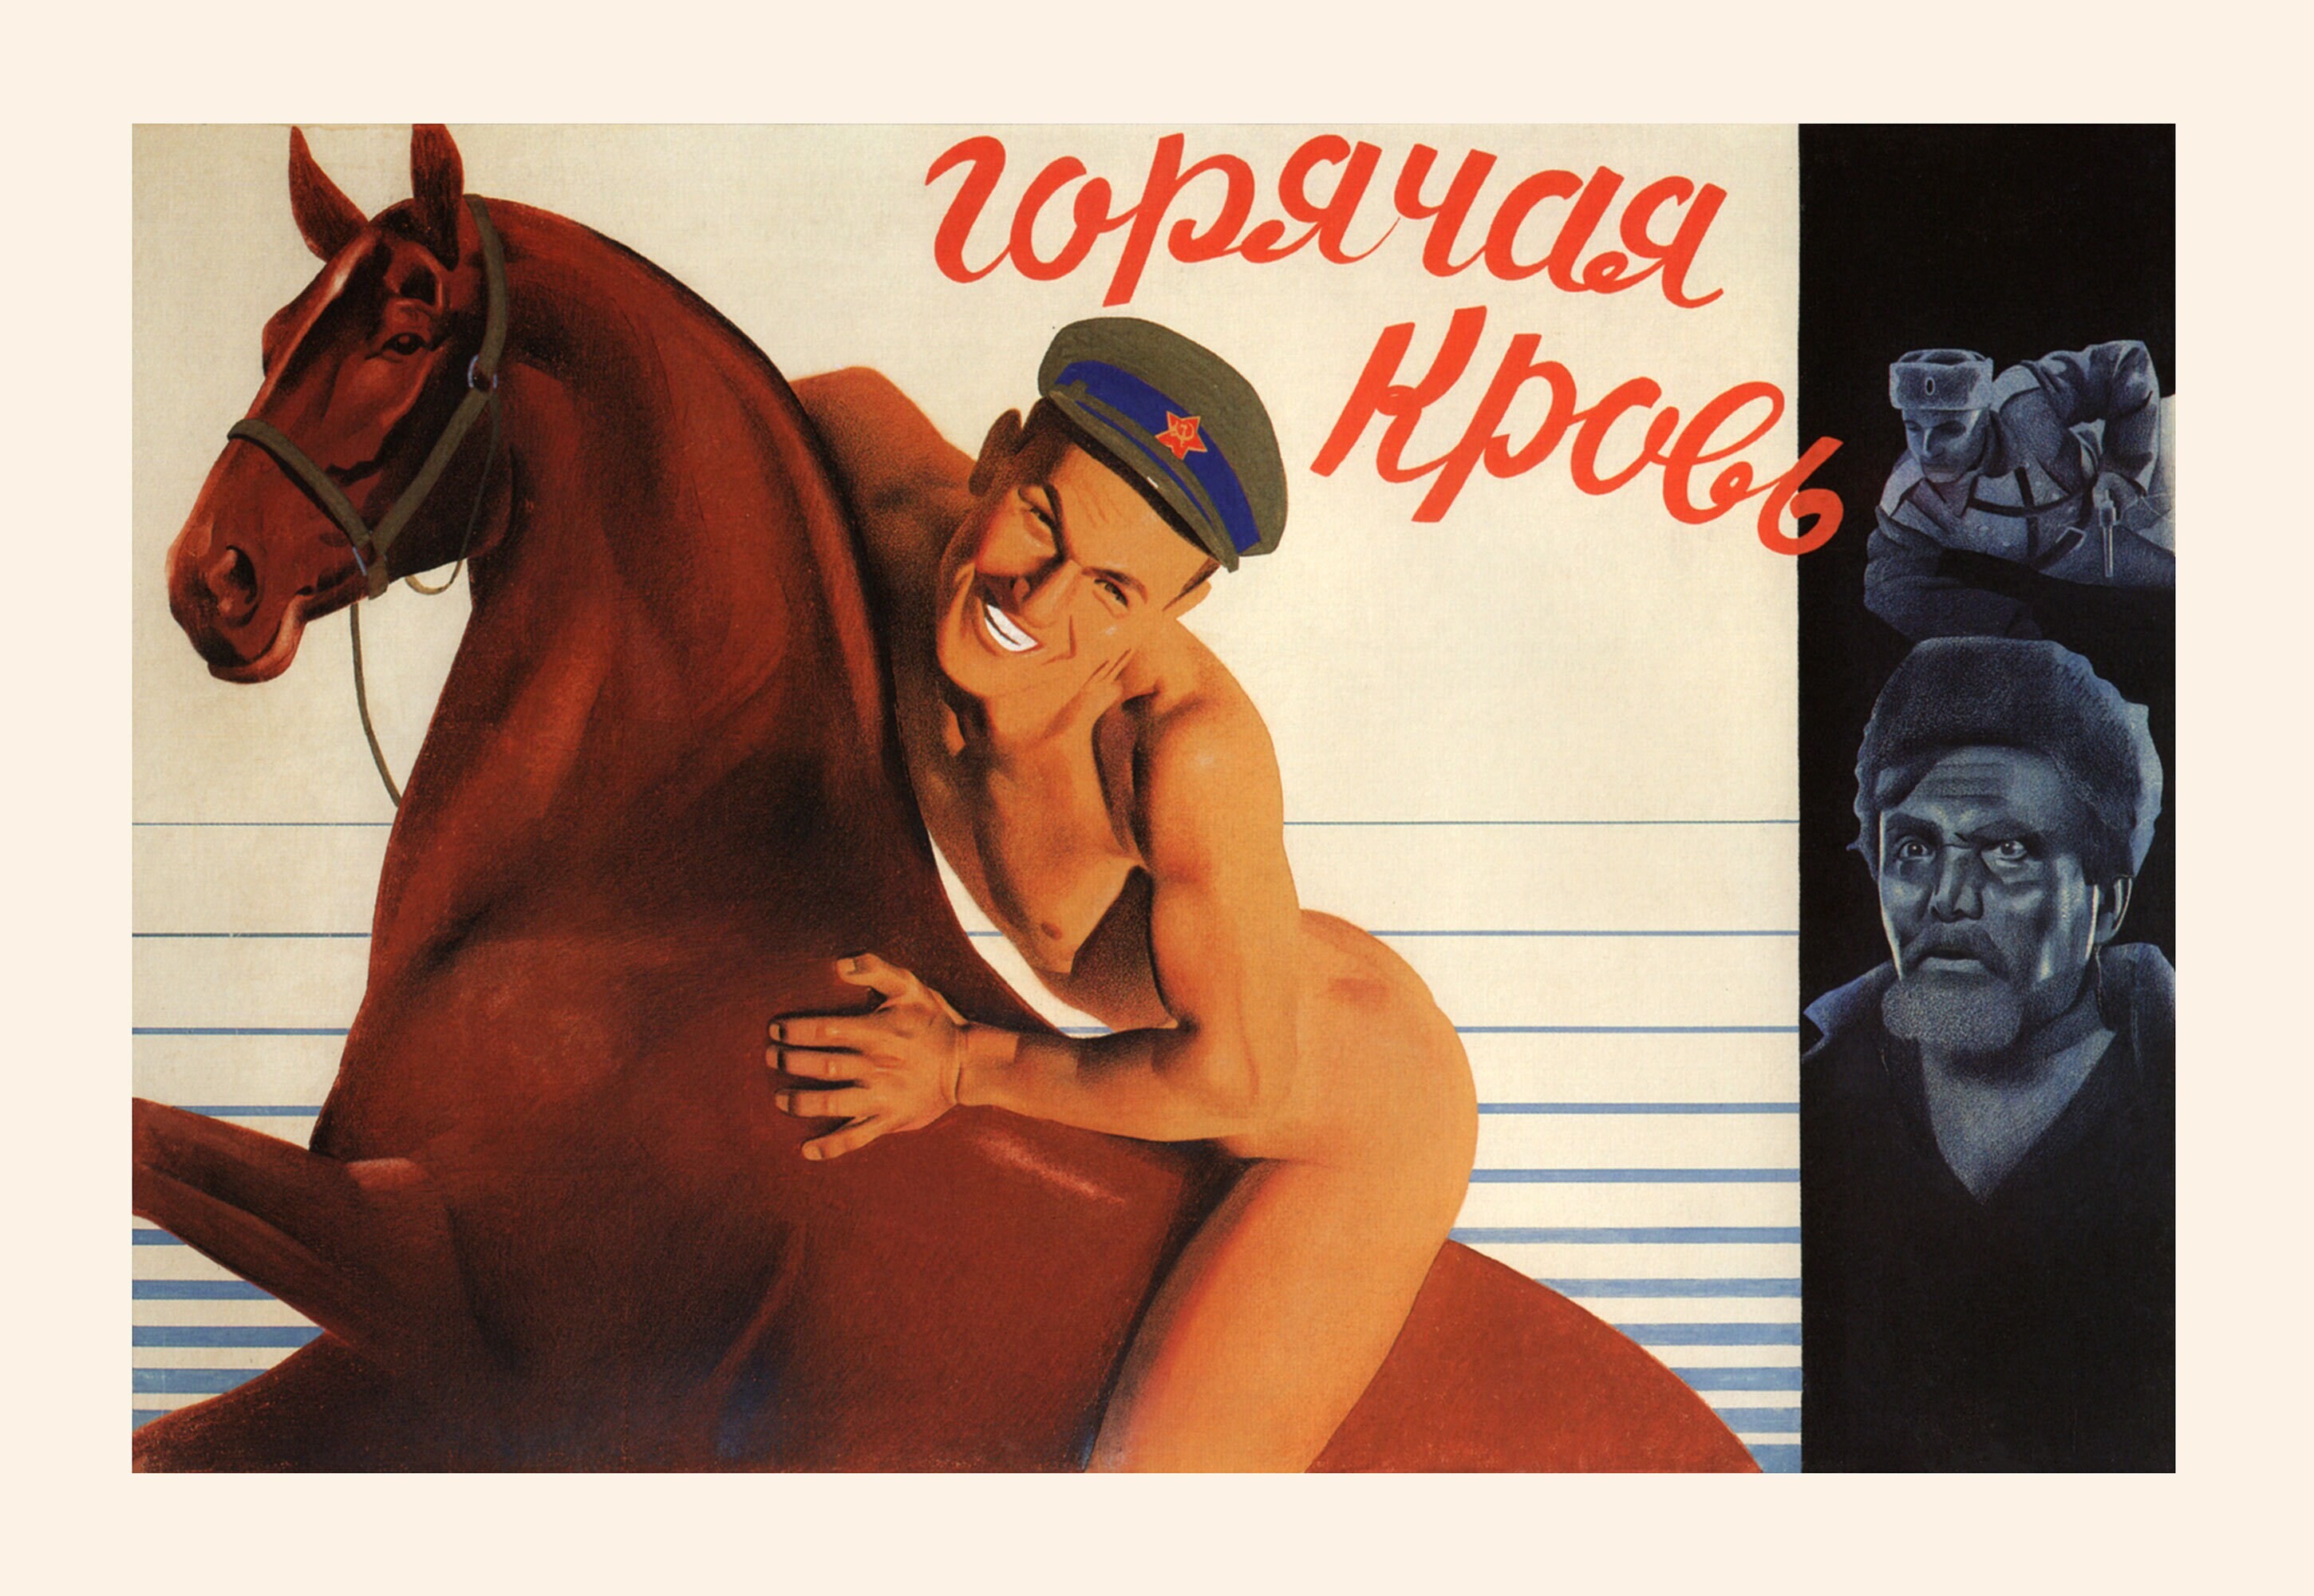 Горячая кровь, 1932 год, режиссёр 
Владимир Королевич, плакат к фильму, автор Анатолий Бельский (авангардное советское искусство, 1920-е)